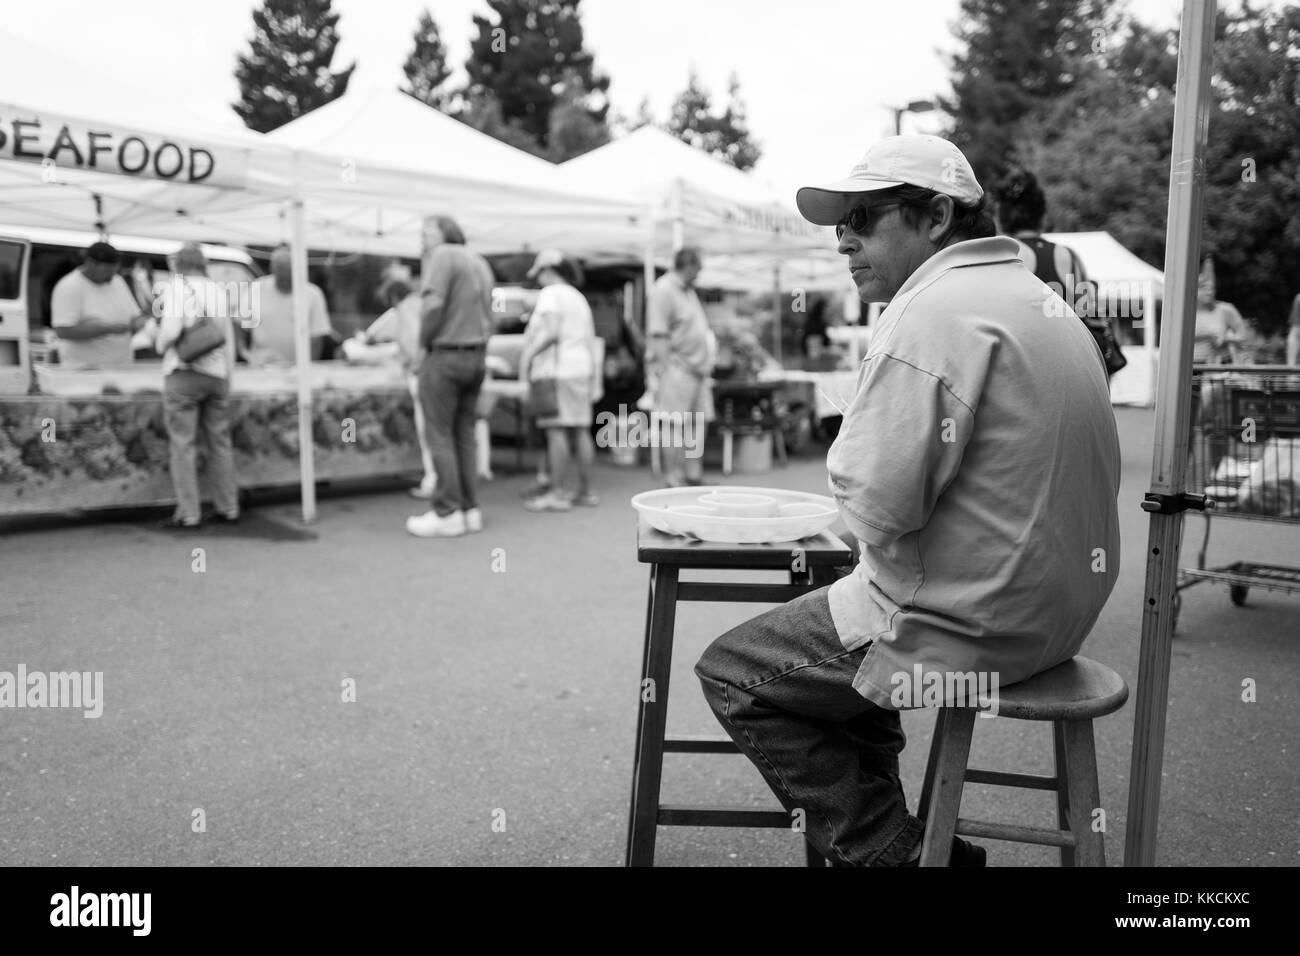 In un mercato settimanale degli agricoltori nella zona della baia di San Francisco, un venditore che indossa un cappello da baseball e occhiali da sole si siede su uno sgabello di fronte al suo stand e si prepara a distribuire campioni di frutta ai clienti che passano, mentre le persone fanno acquisti in altri stand sullo sfondo, Danville, California, 5 giugno 2016. Foto Stock